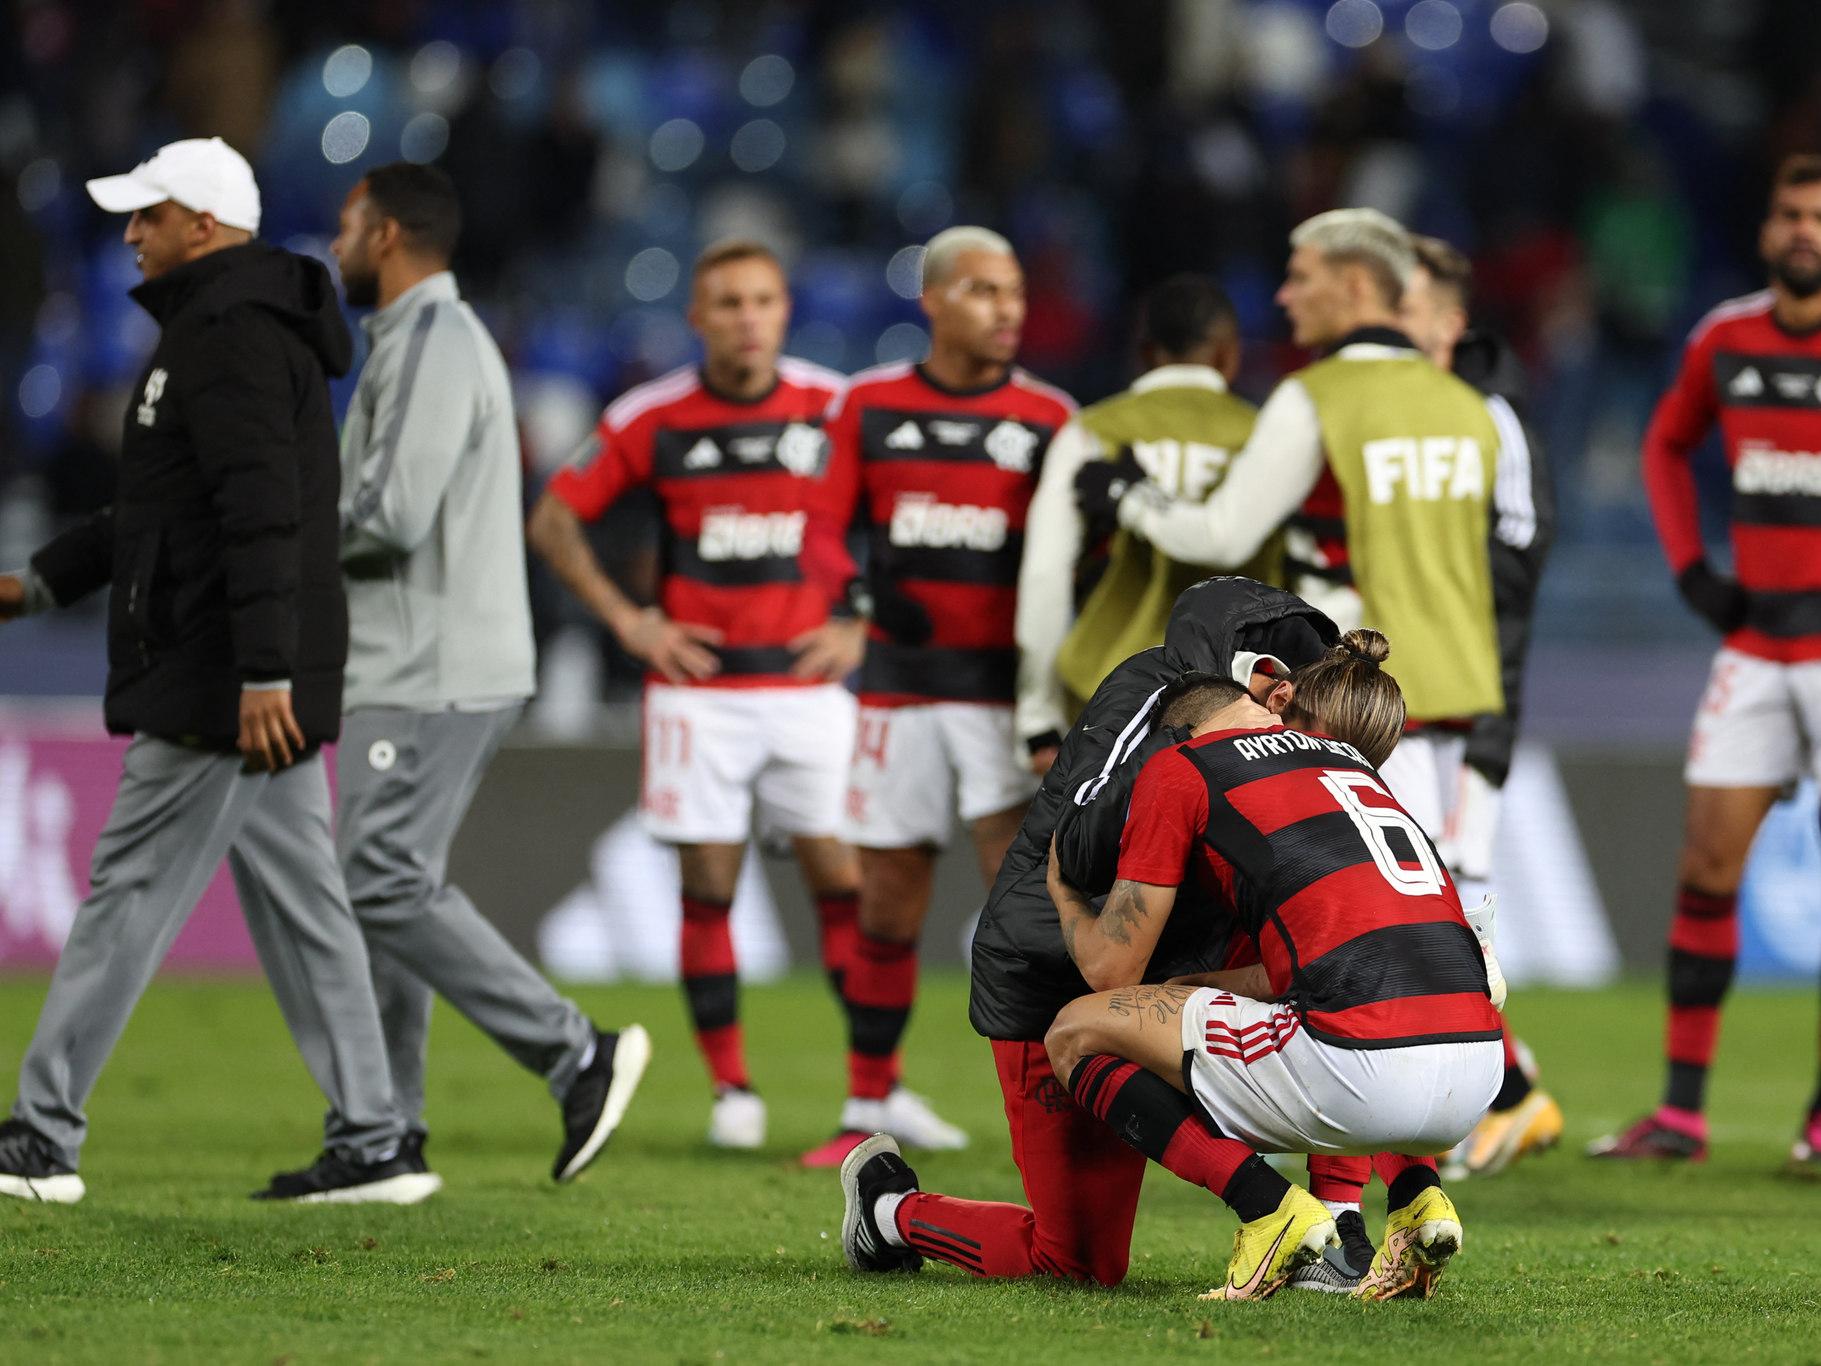 Coluna do Fla / Flamengo - JÁ PENSOU? 🔴⚫ Após passagem apagada pelo  Borussia Dortmund, da Alemanha, o Real Madrid reavalia o futuro de Reinier  e cogita um novo empréstimo. O jogador